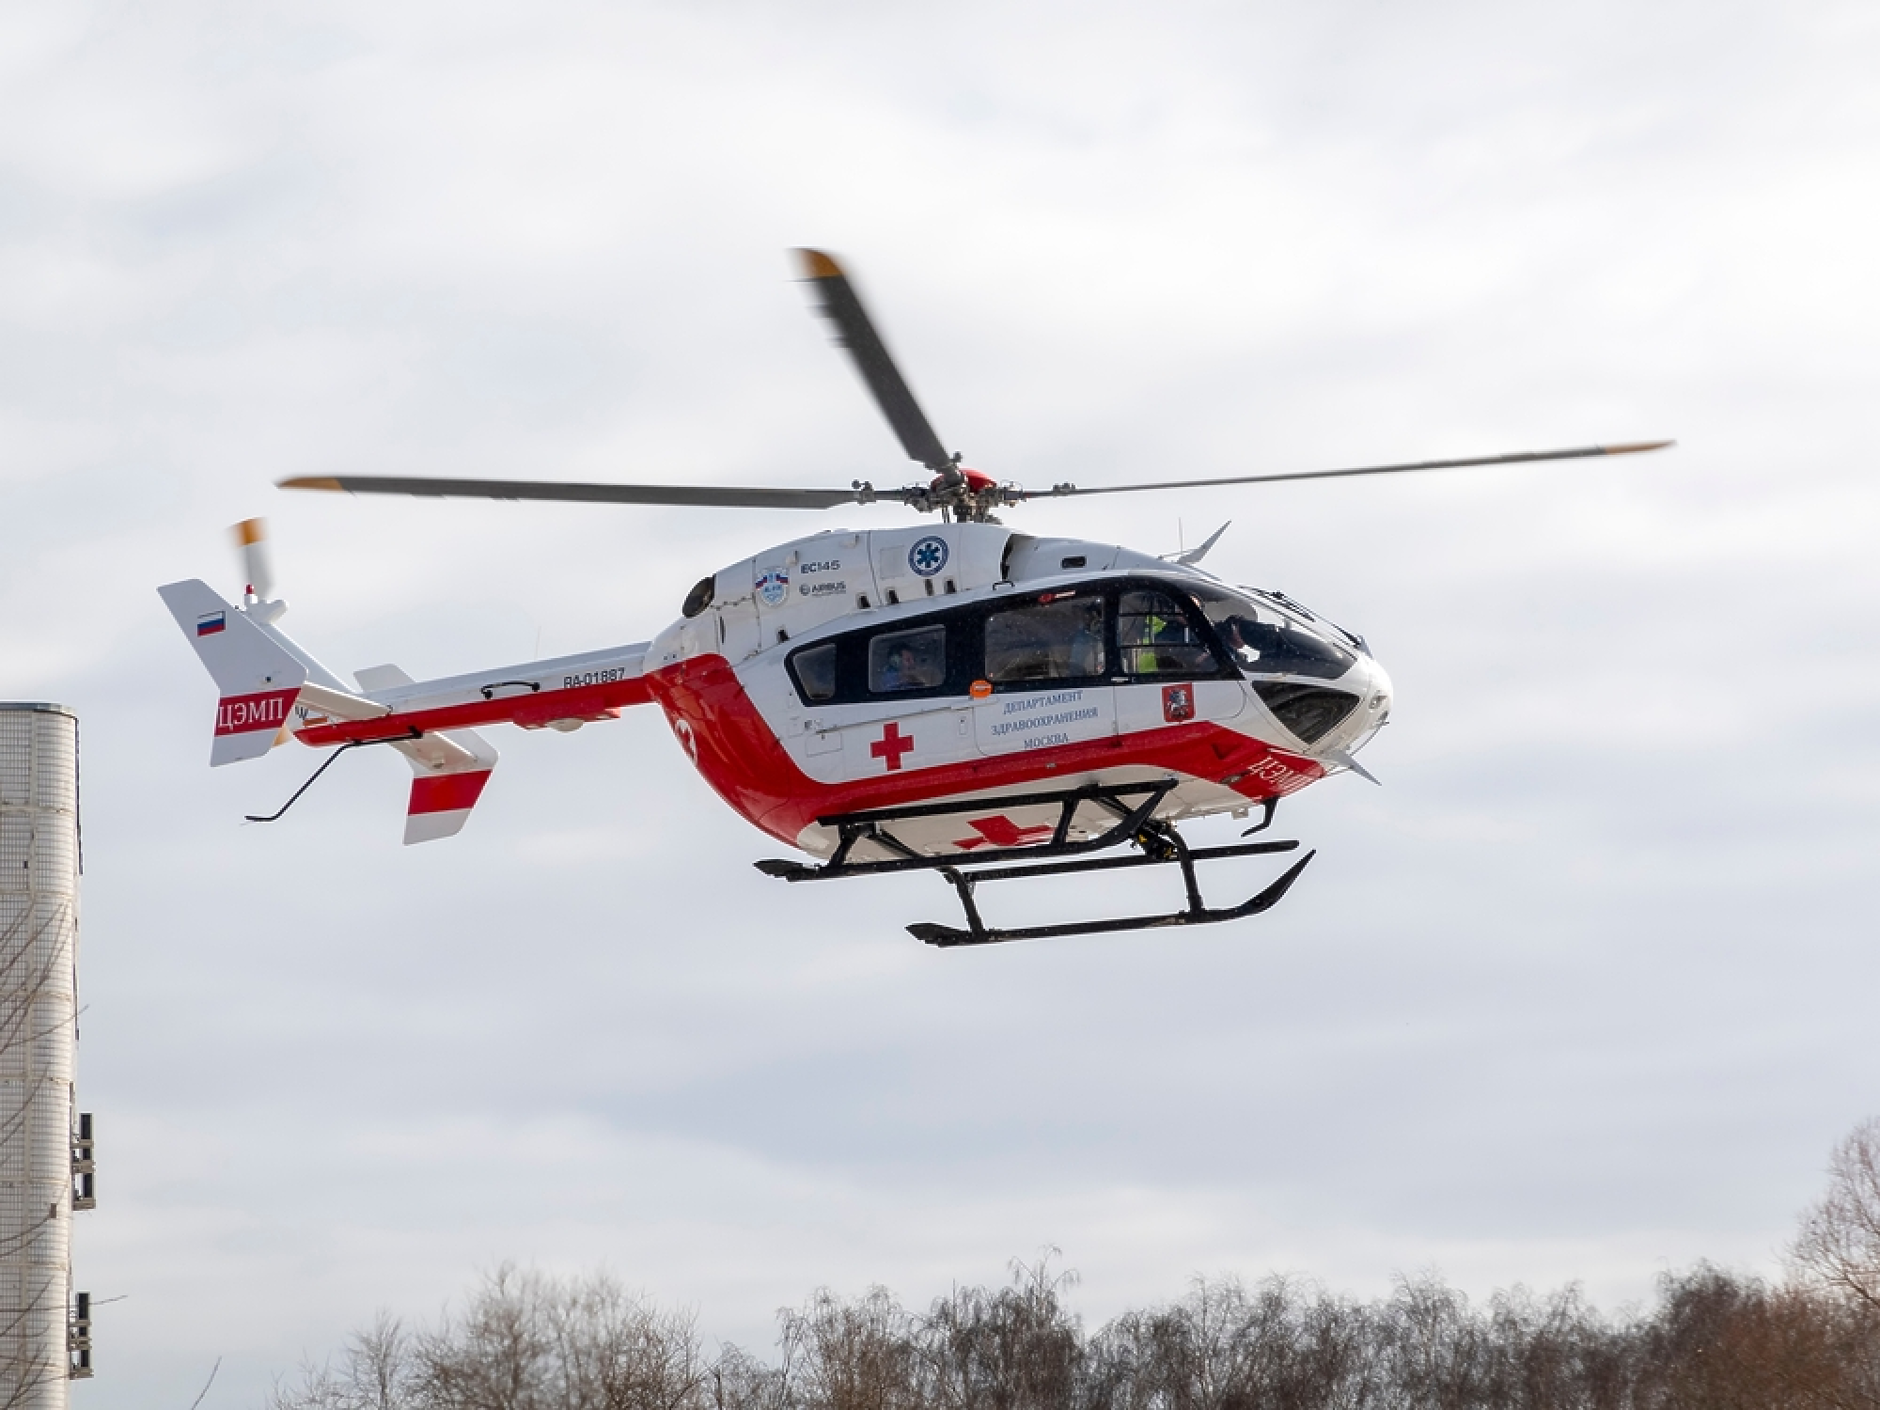 Първият медицински хеликоптер може да прелети до България на 31 януари, ако времето позволява, каза министър Гвоздейков